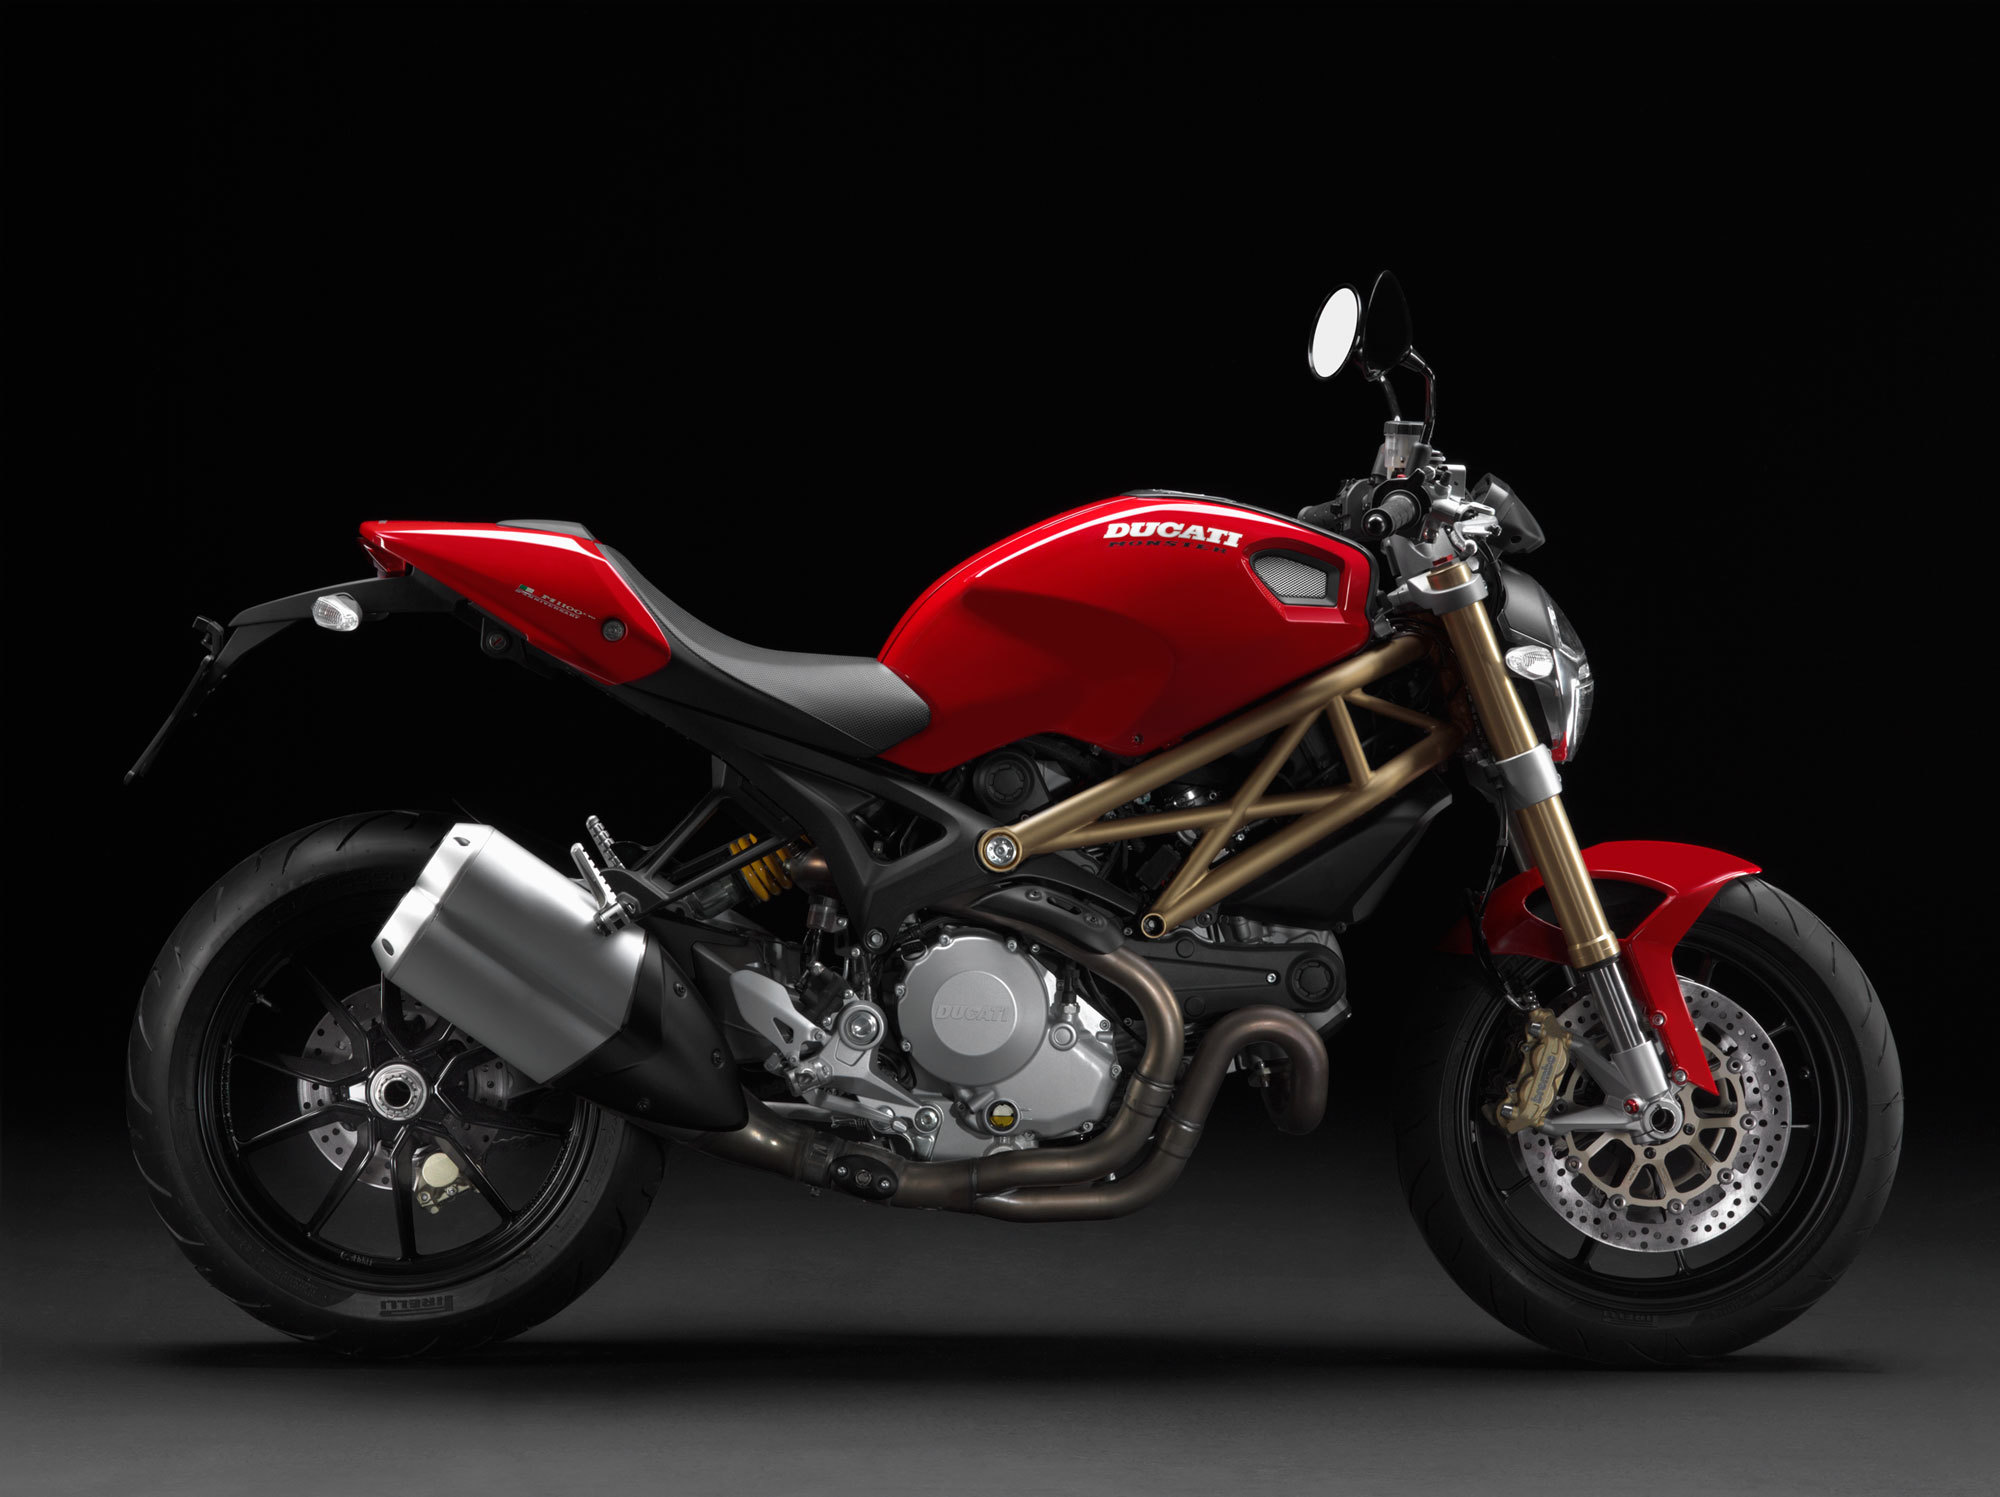 Скачать обои Ducati Monster 796 Corse Stripe на телефон бесплатно